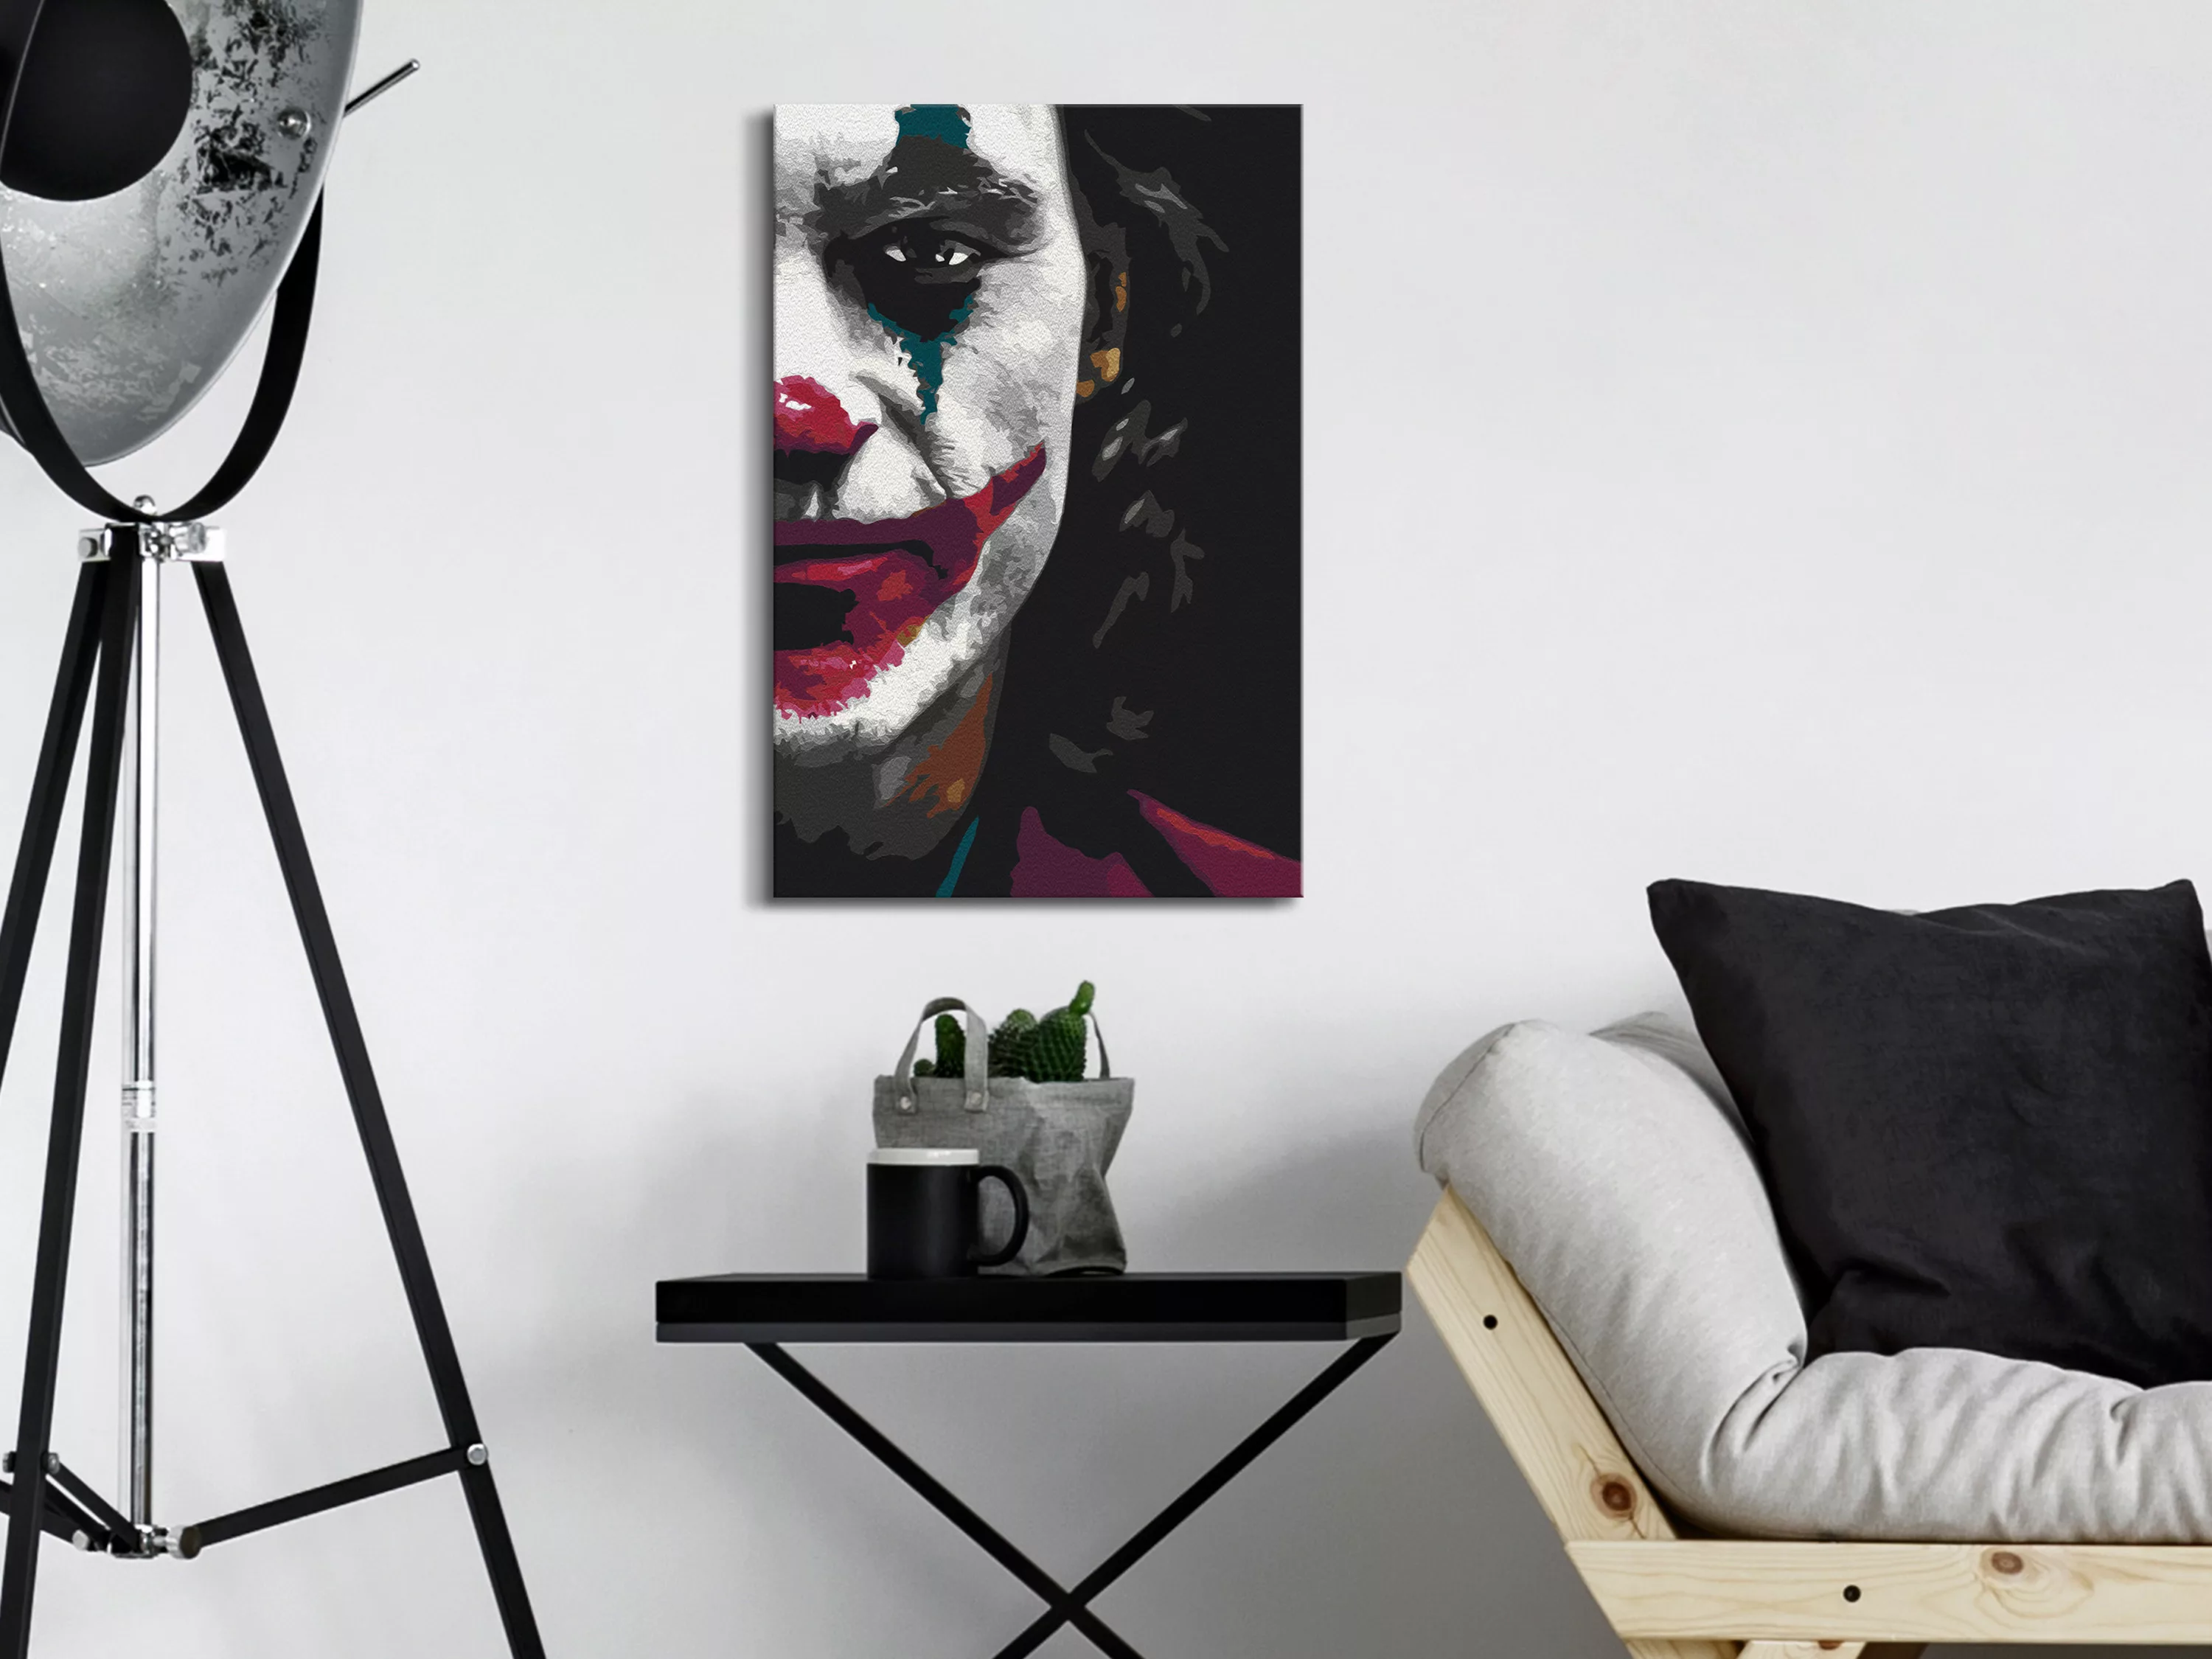 Malen Nach Zahlen - Dark Joker günstig online kaufen